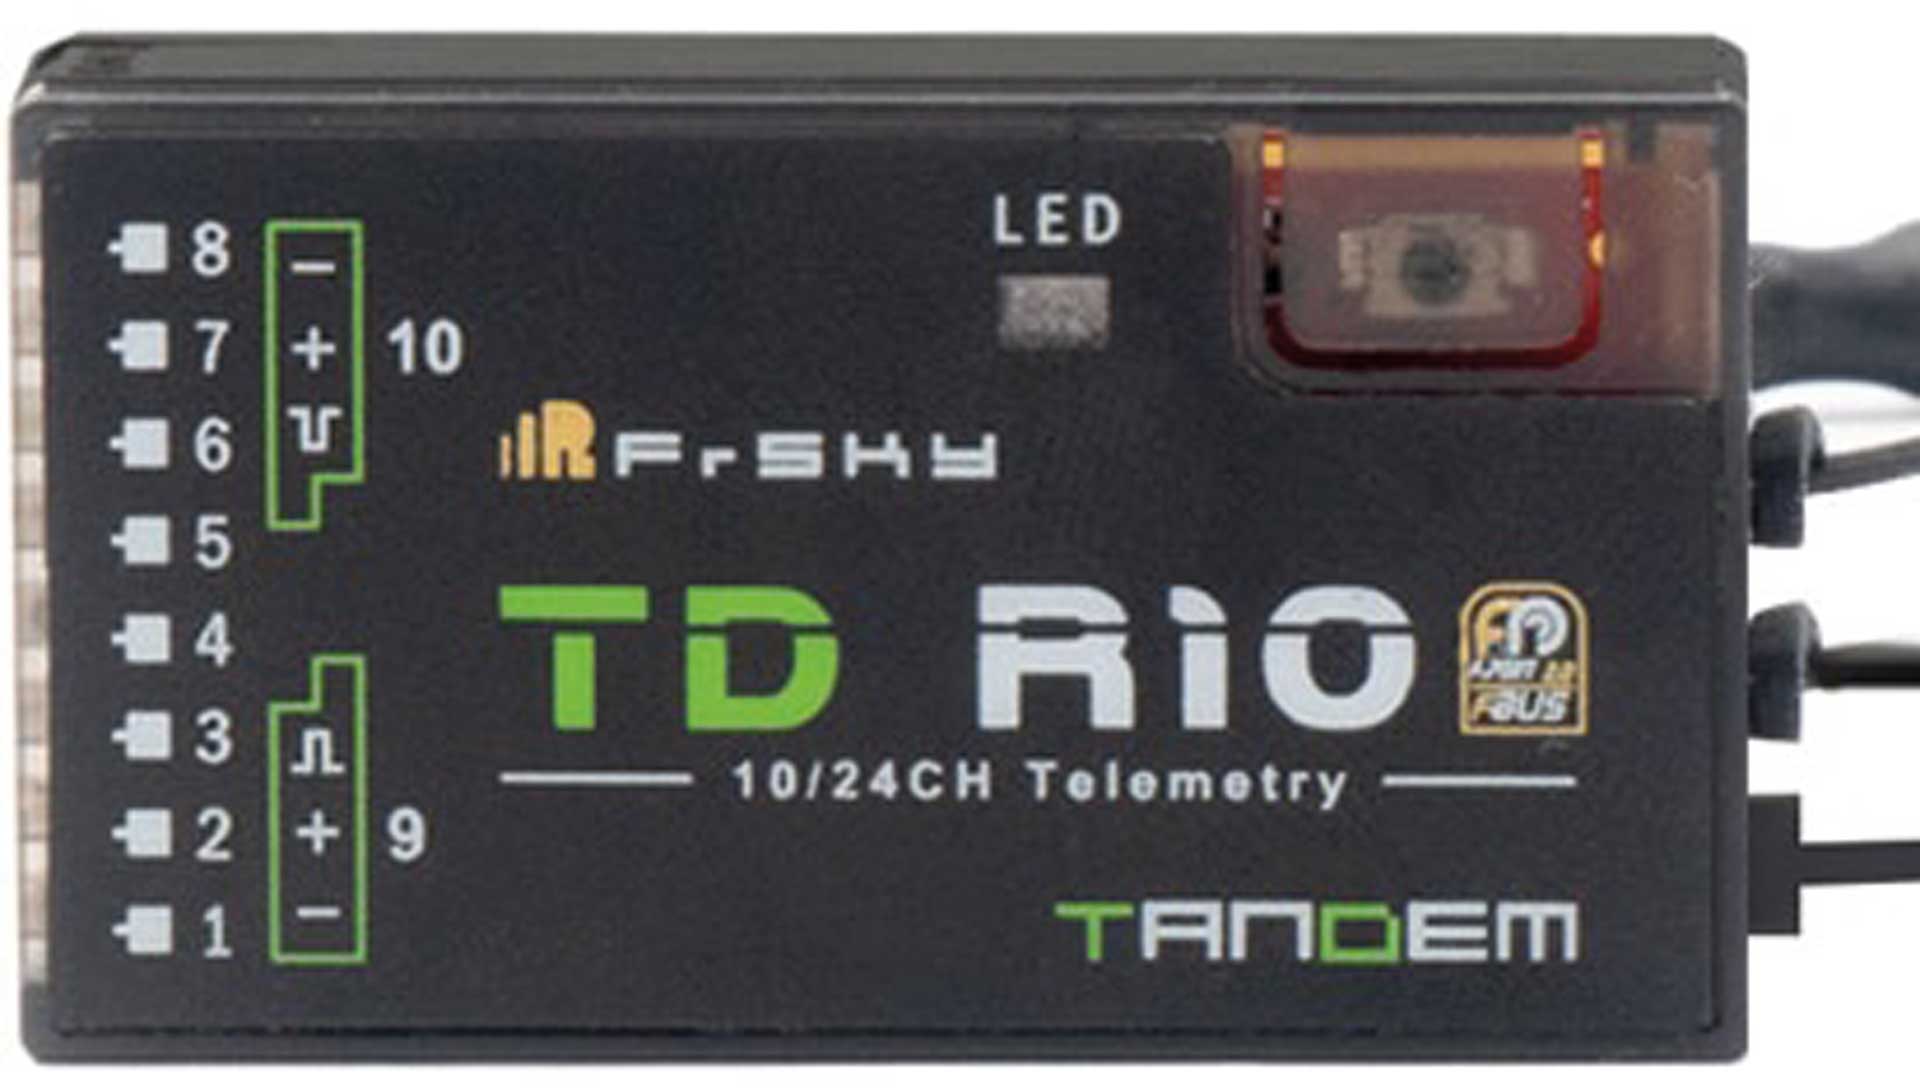 FrSky Récepteur tandem TD-R10 2,4 GHz/868 MHz